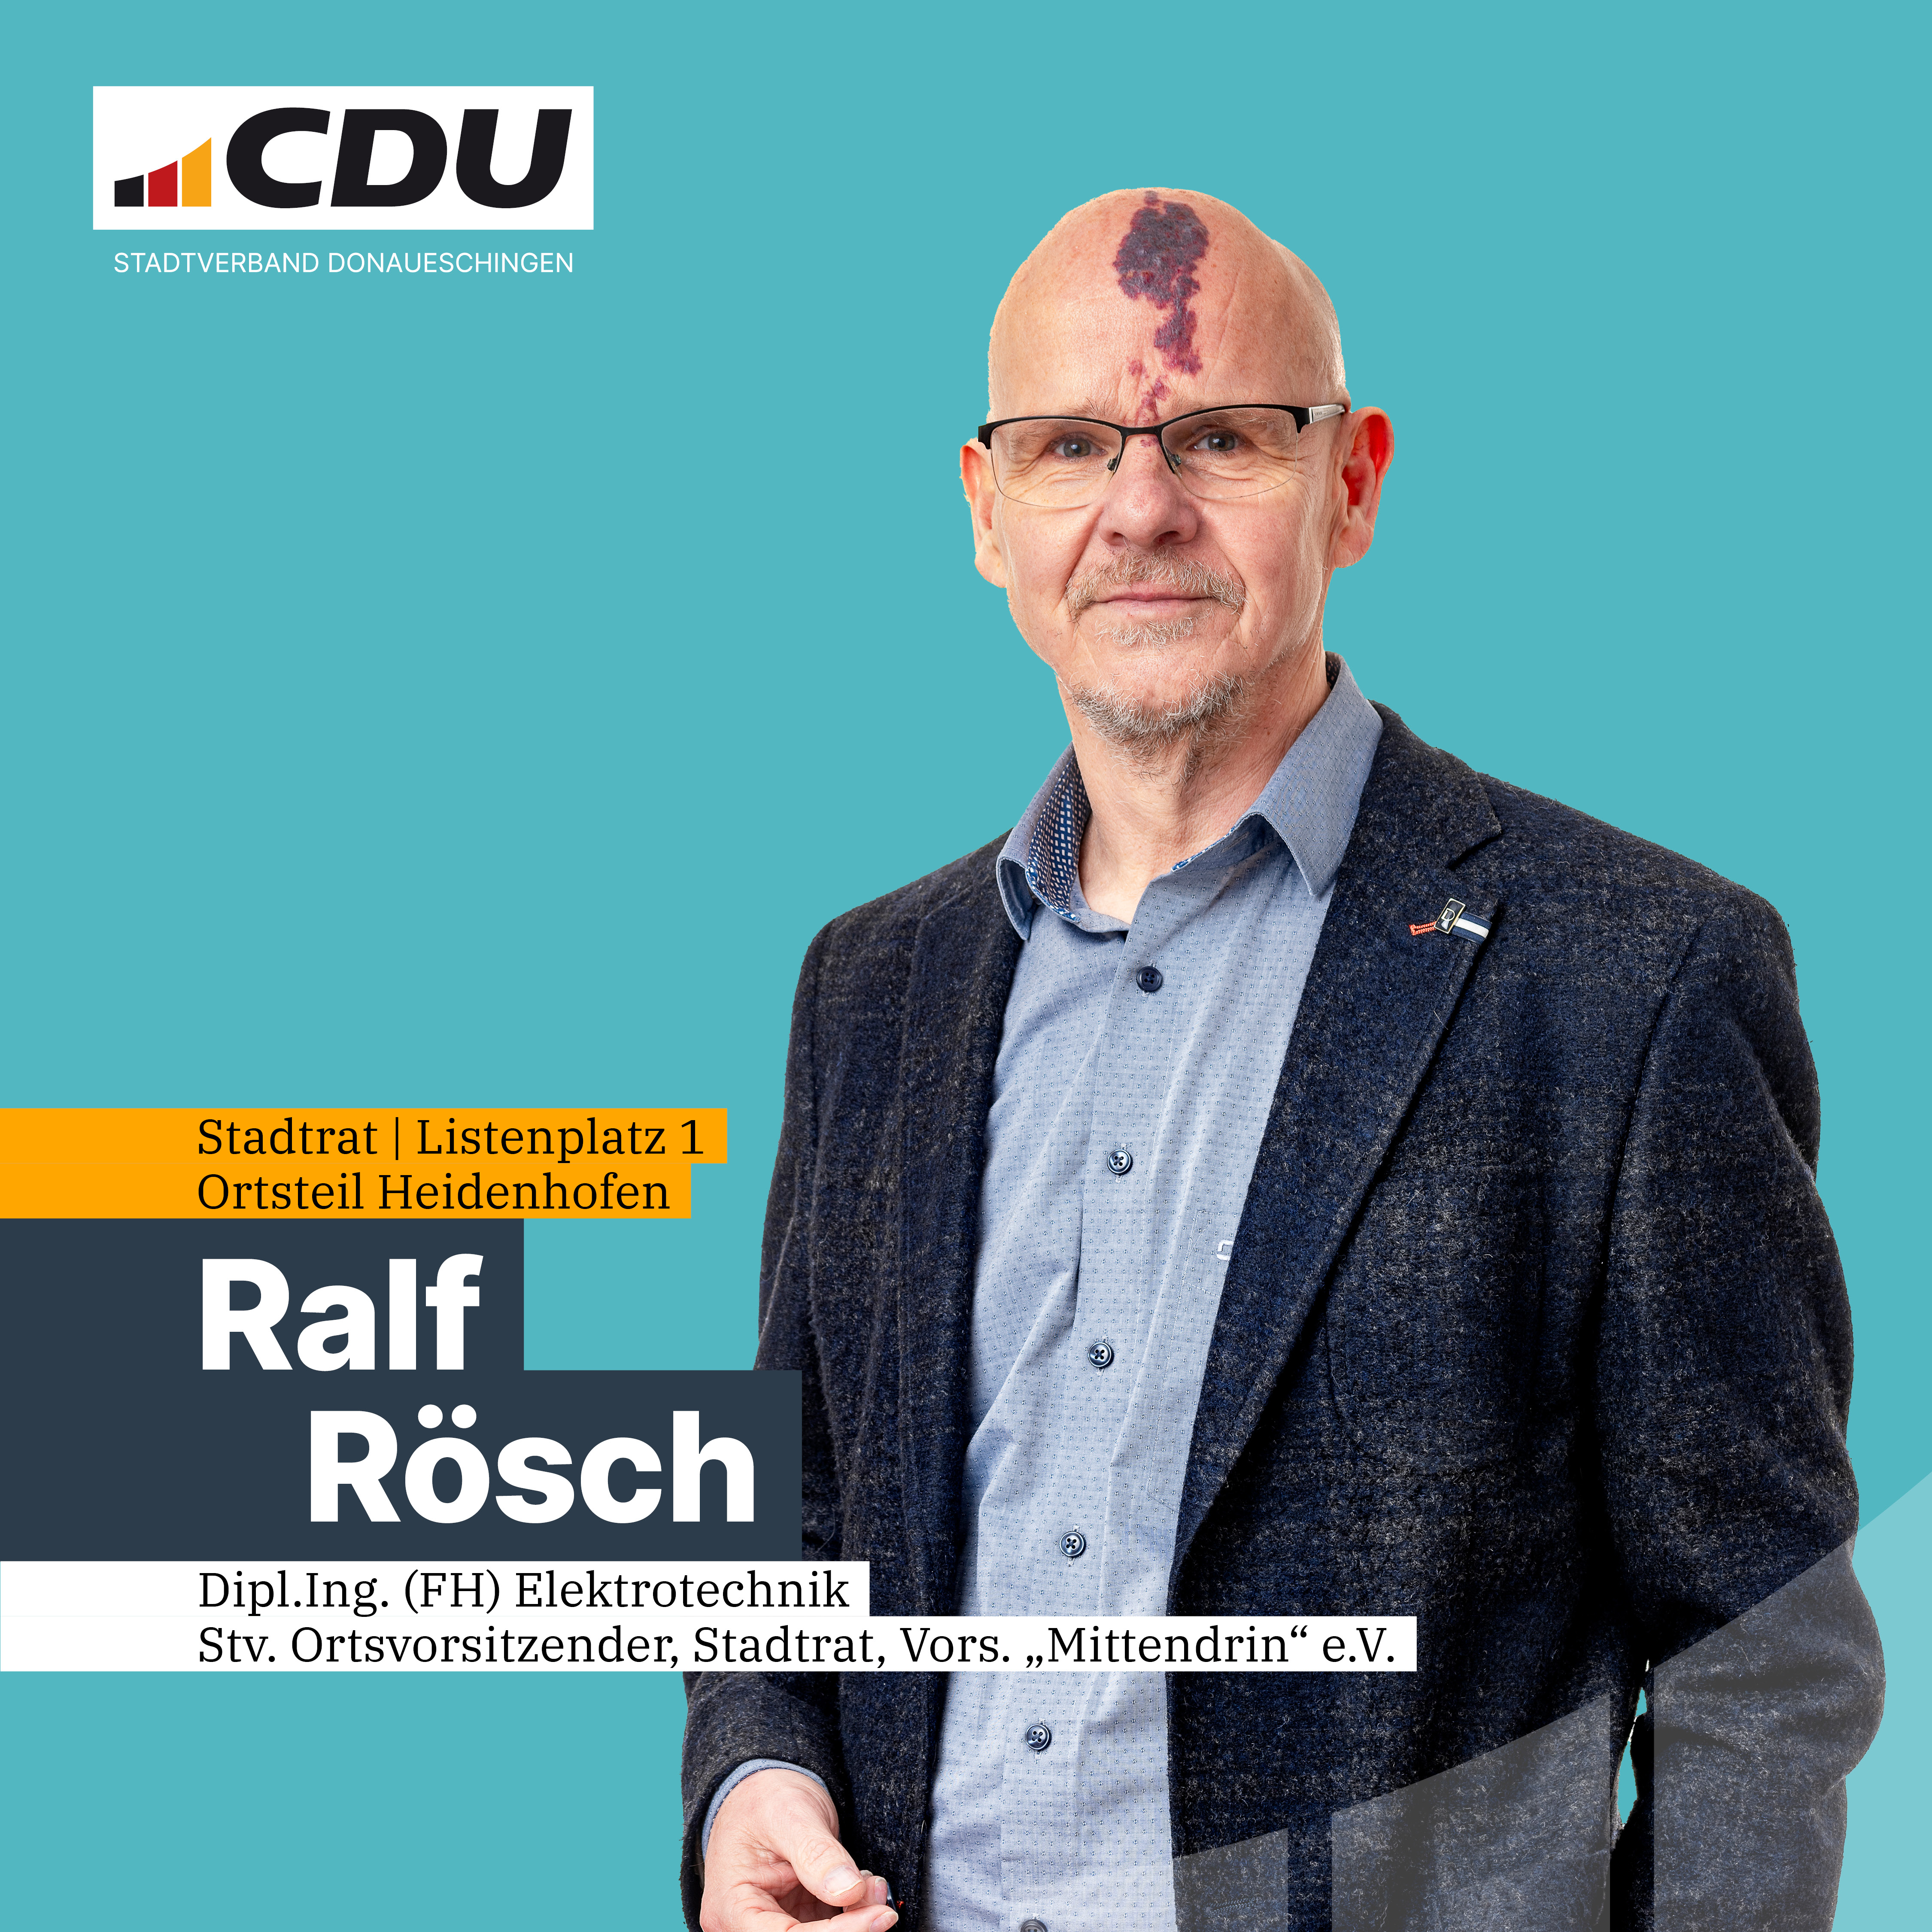  Ralf Rsch